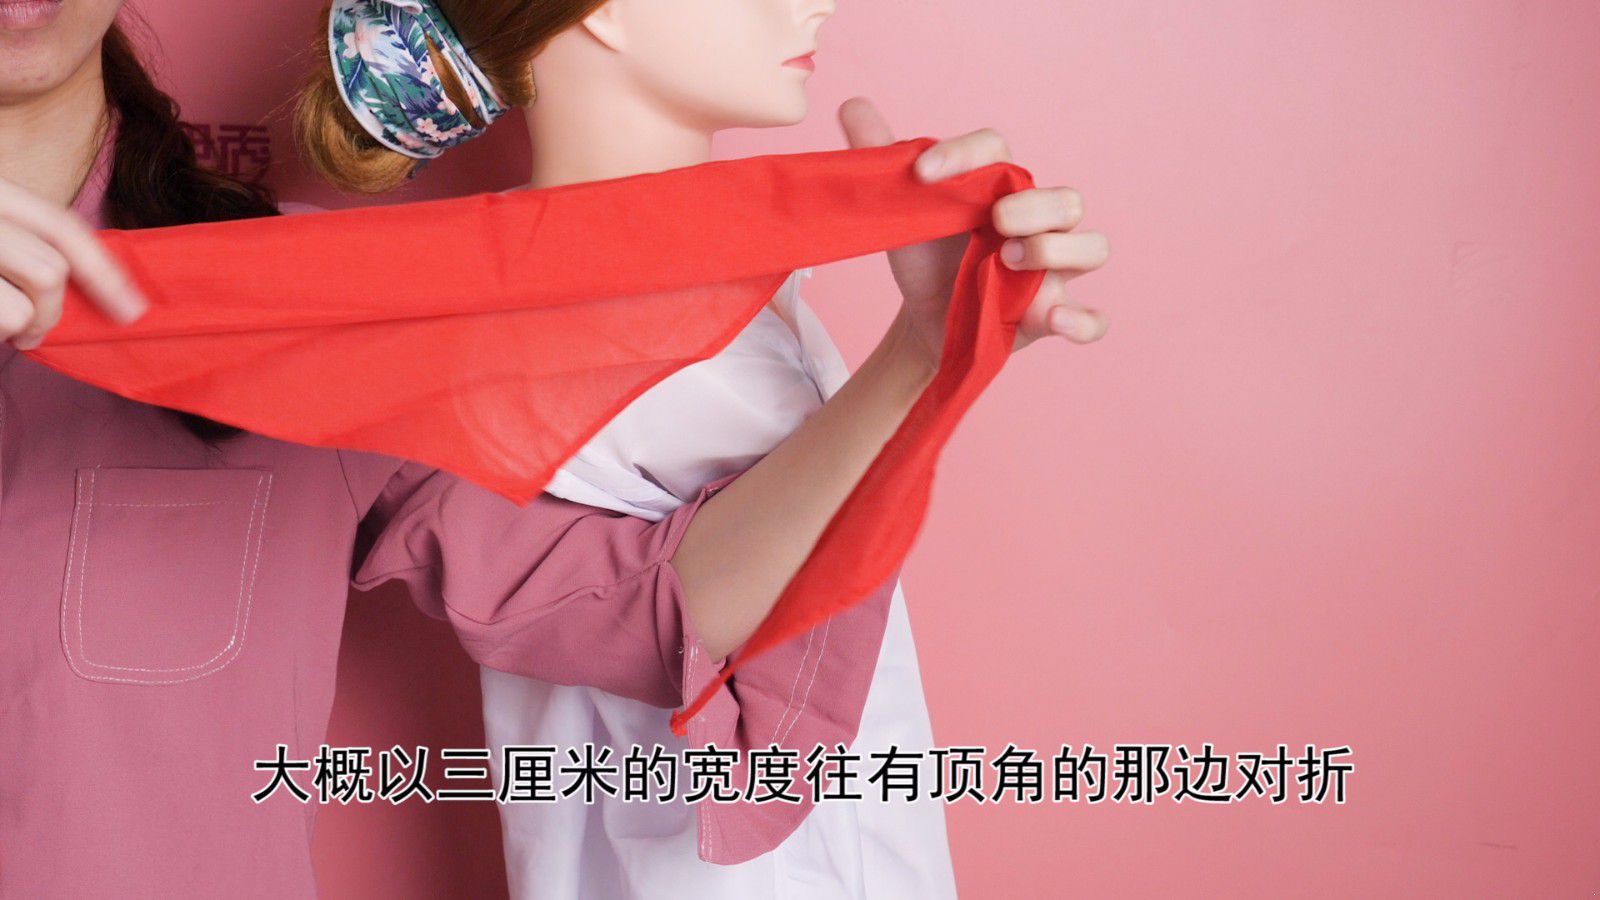 红领巾的系法|红领巾怎么系|怎么系红领巾|